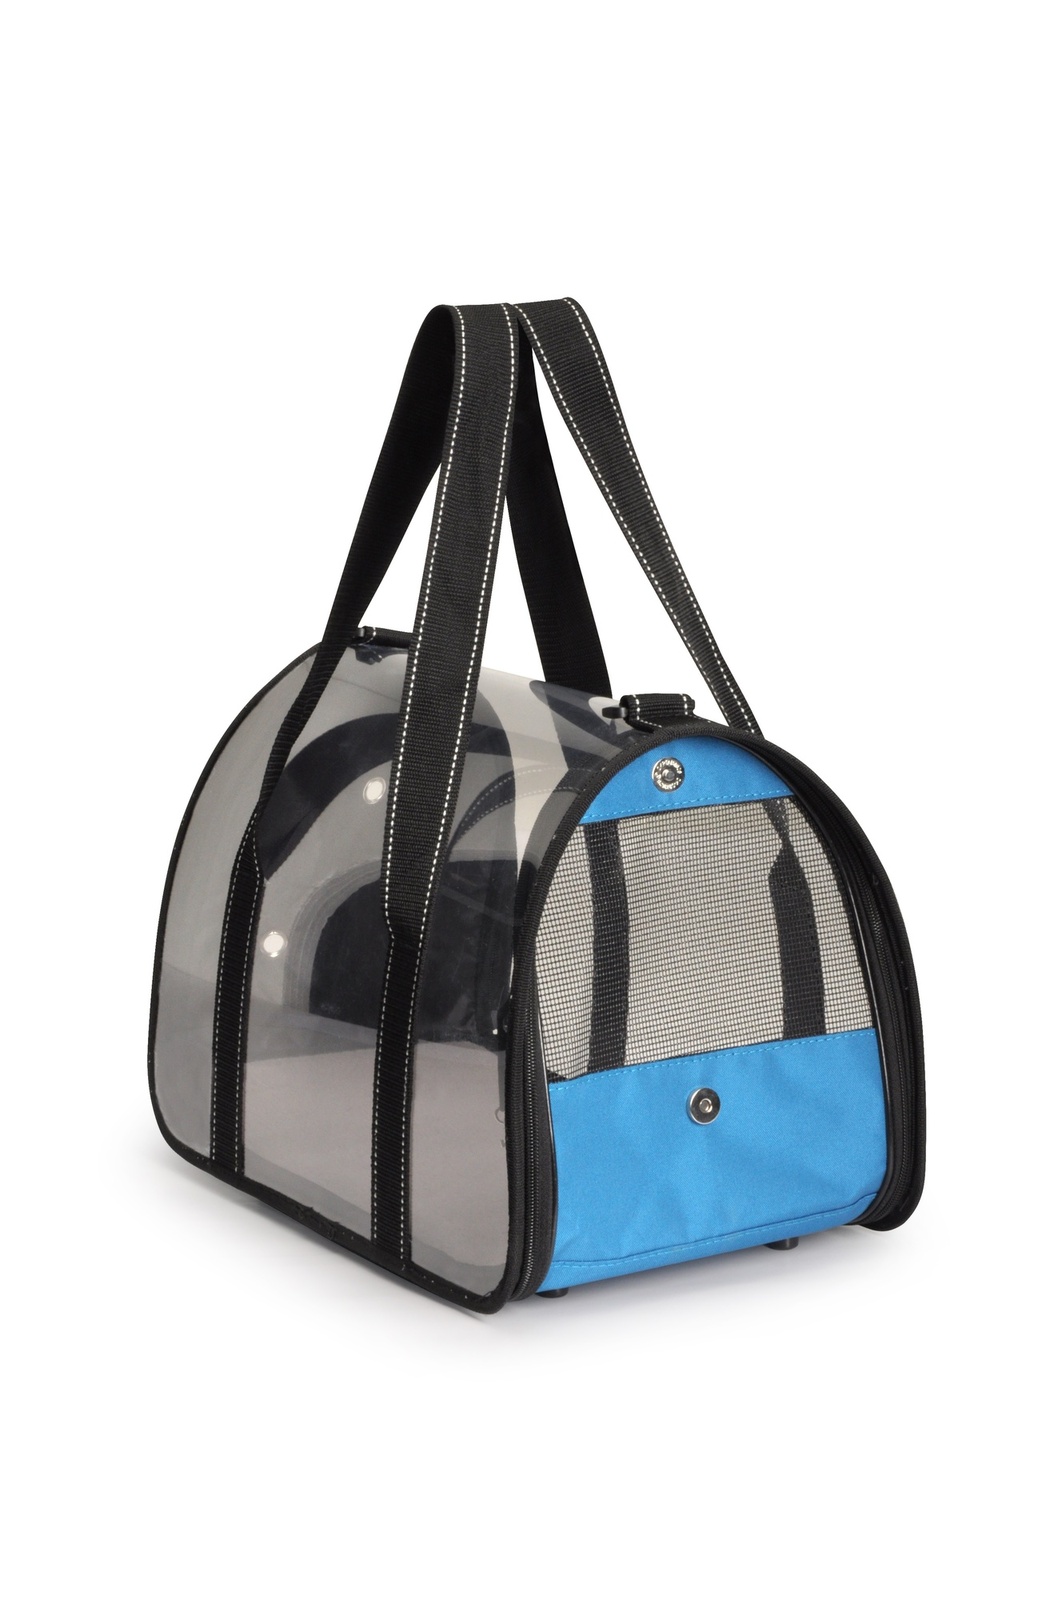 Camon Camon сумка-переноска прозрачная, 42x25x25 см, голубая (670 г) camon camon переноска для домашних животных rhino белая 52 x 34 5 x 33 см 1 56 кг